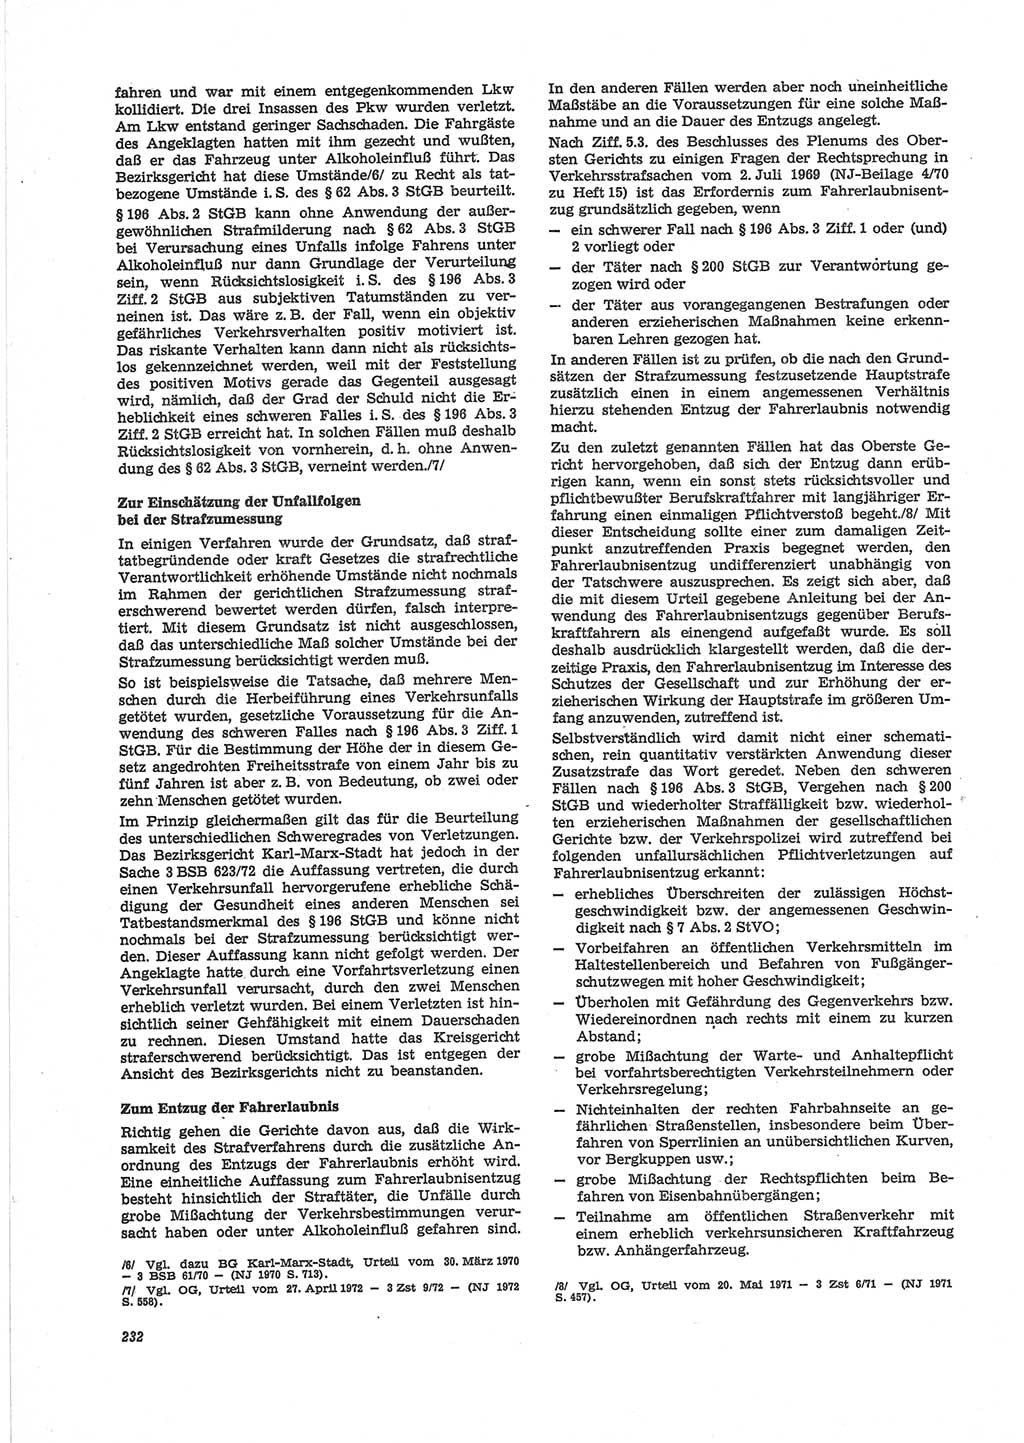 Neue Justiz (NJ), Zeitschrift für Recht und Rechtswissenschaft [Deutsche Demokratische Republik (DDR)], 28. Jahrgang 1974, Seite 232 (NJ DDR 1974, S. 232)